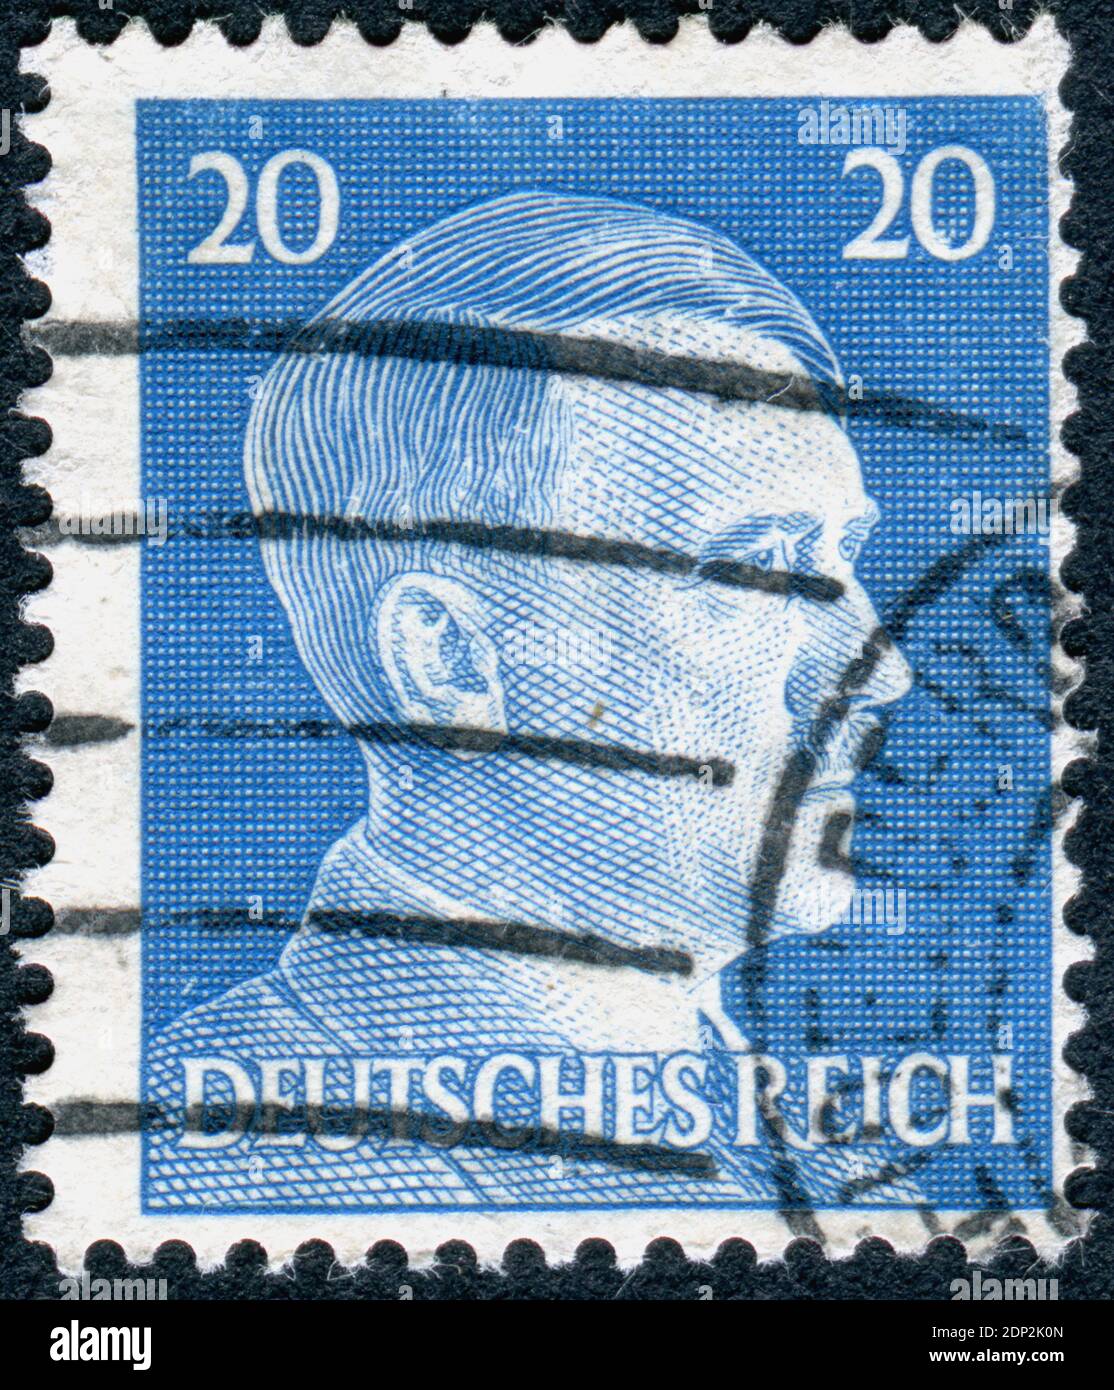 ALLEMAGNE - VERS 1941: Timbre-poste imprimé en Allemagne, a montré le portrait d'Adolf Hitler - un homme politique allemand, chef (Fuehrer) de l'Allemagne et du Parti nazi, vers 1941 Banque D'Images